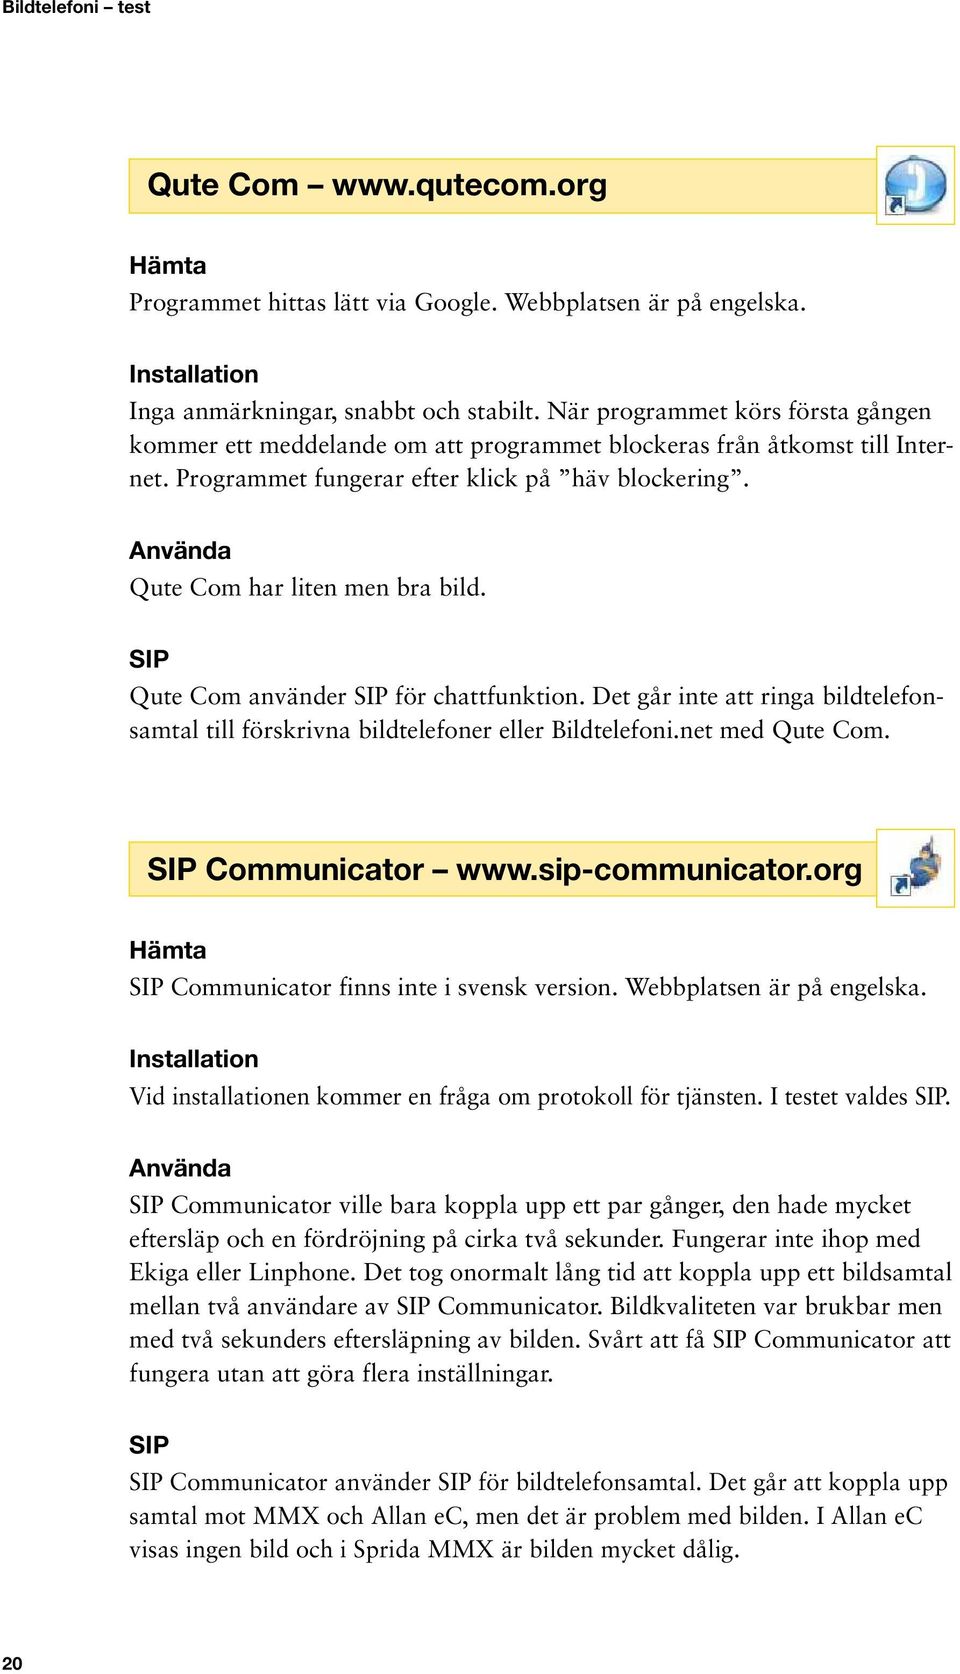 Qute Com använder för chattfunktion. Det går inte att ringa bildtelefonsamtal till förskrivna bildtelefoner eller Bildtelefoni.net med Qute Com. Communicator www.sip-communicator.